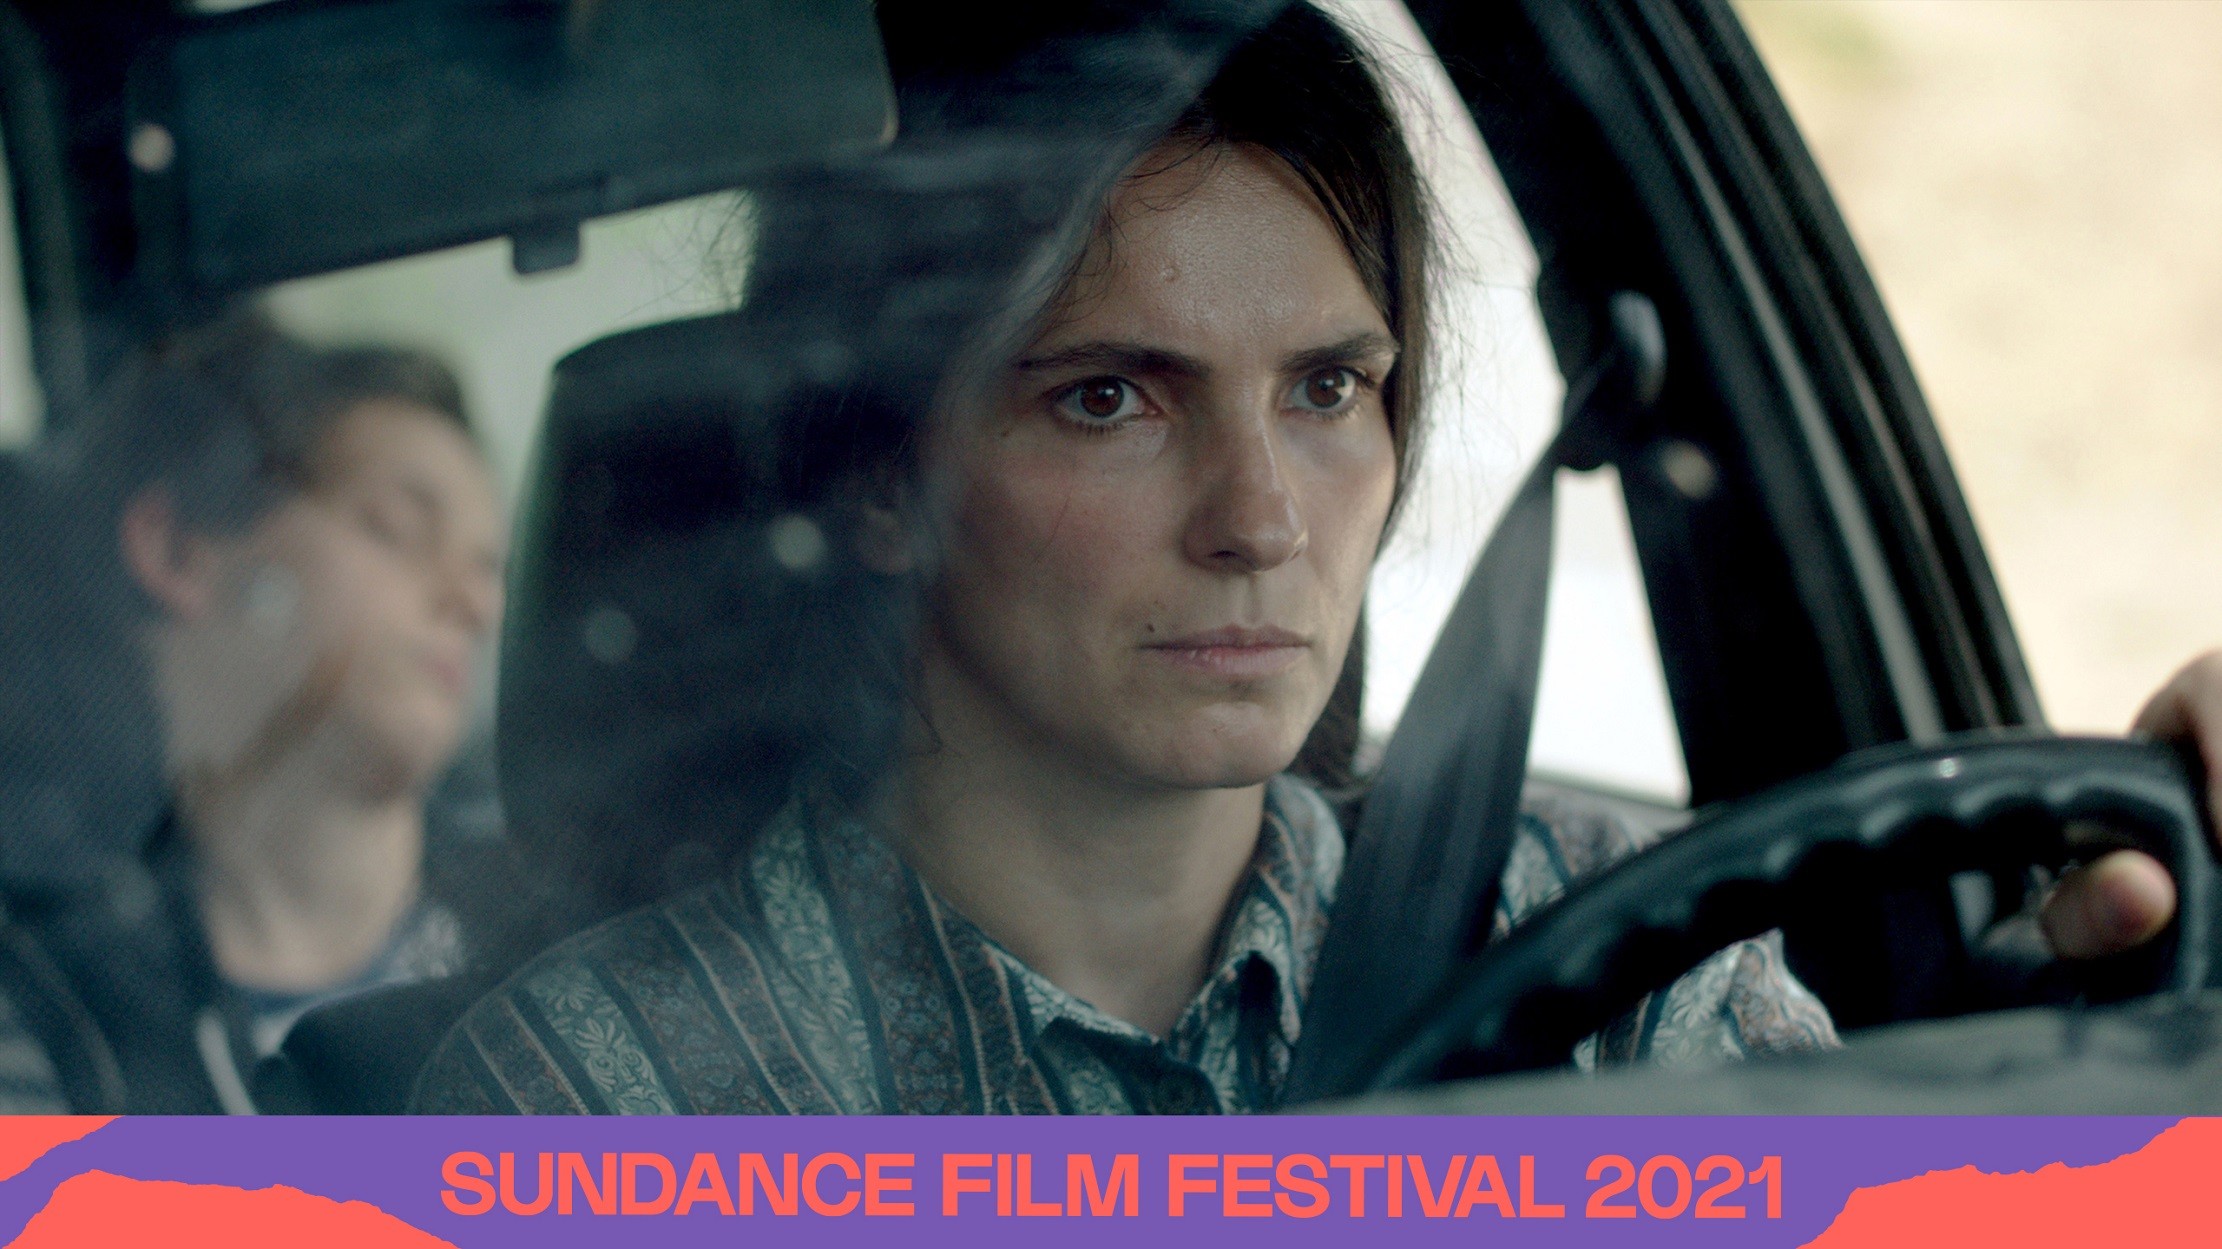 ''Zgjoi'' i Blerta Bashollit në konkurencë kryesore në Sundance Film Festival